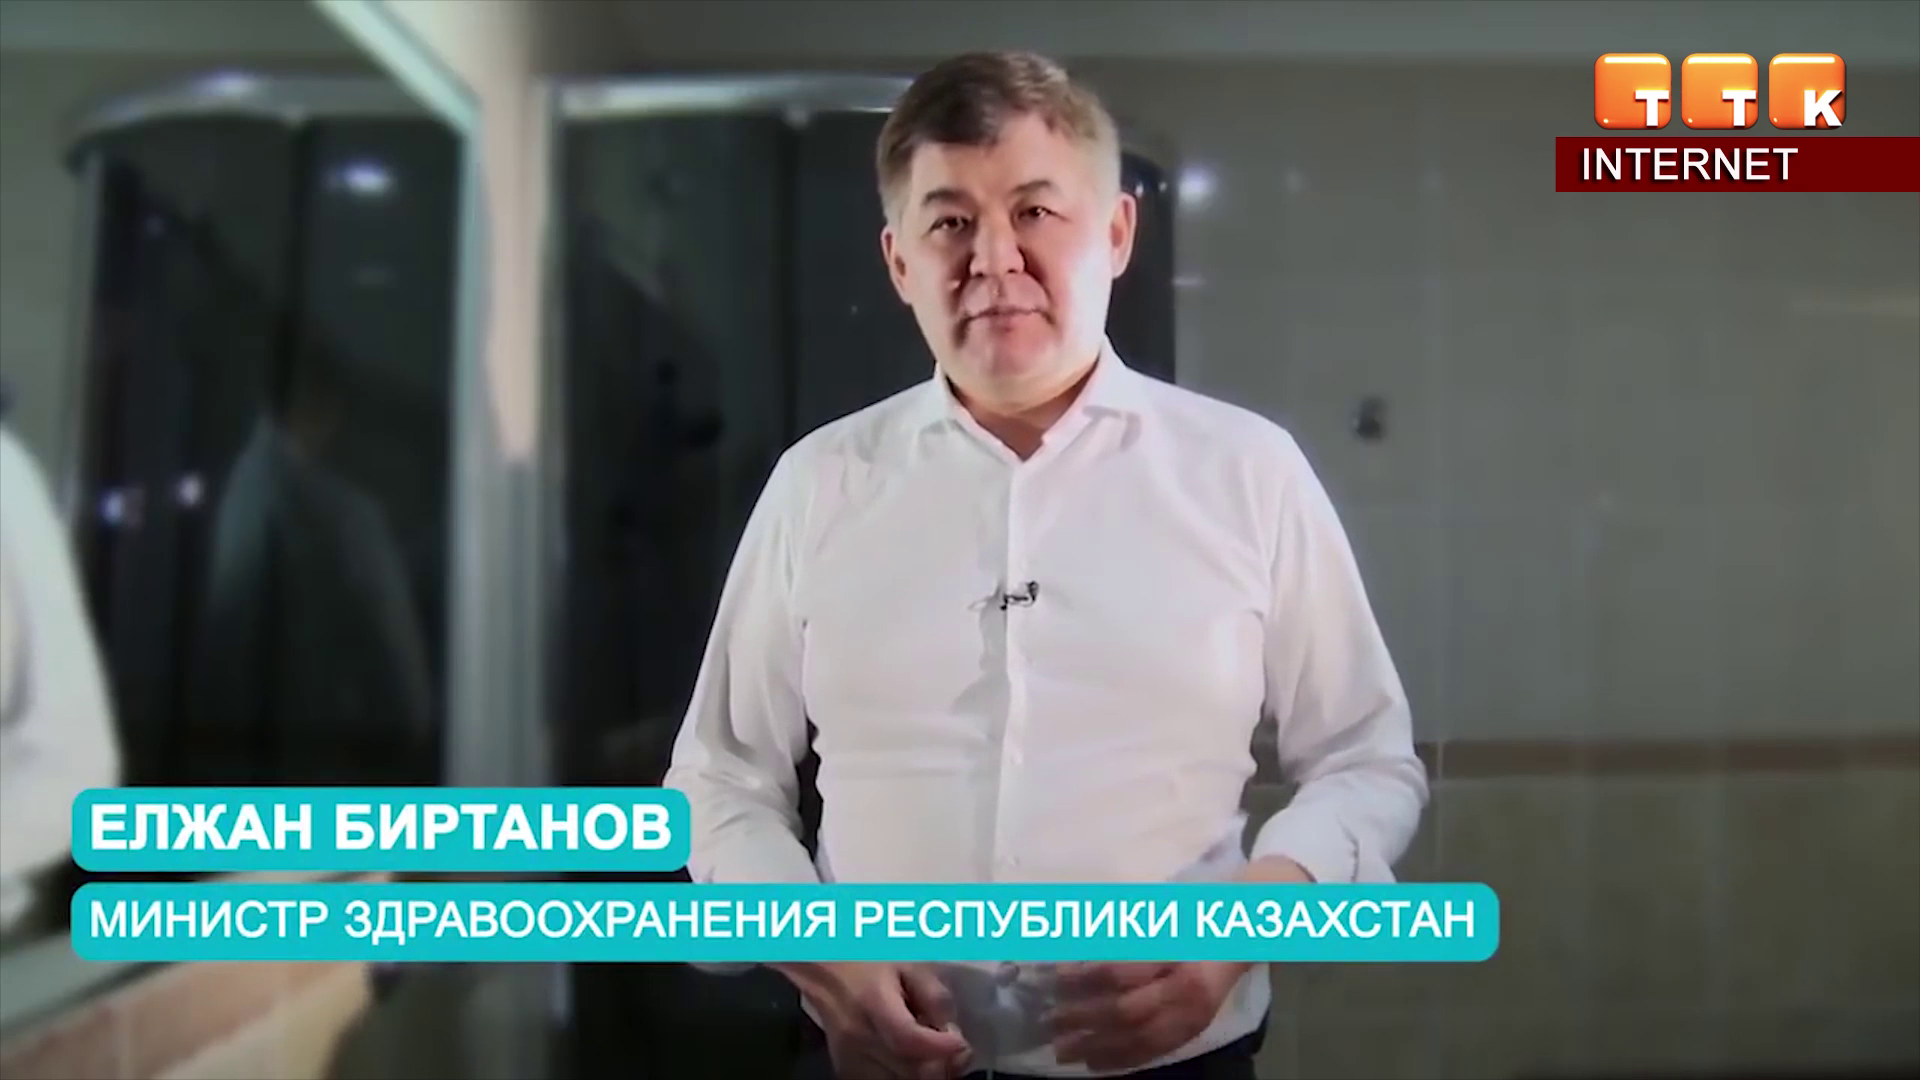 Казахстанцев учат правильно мыть руки